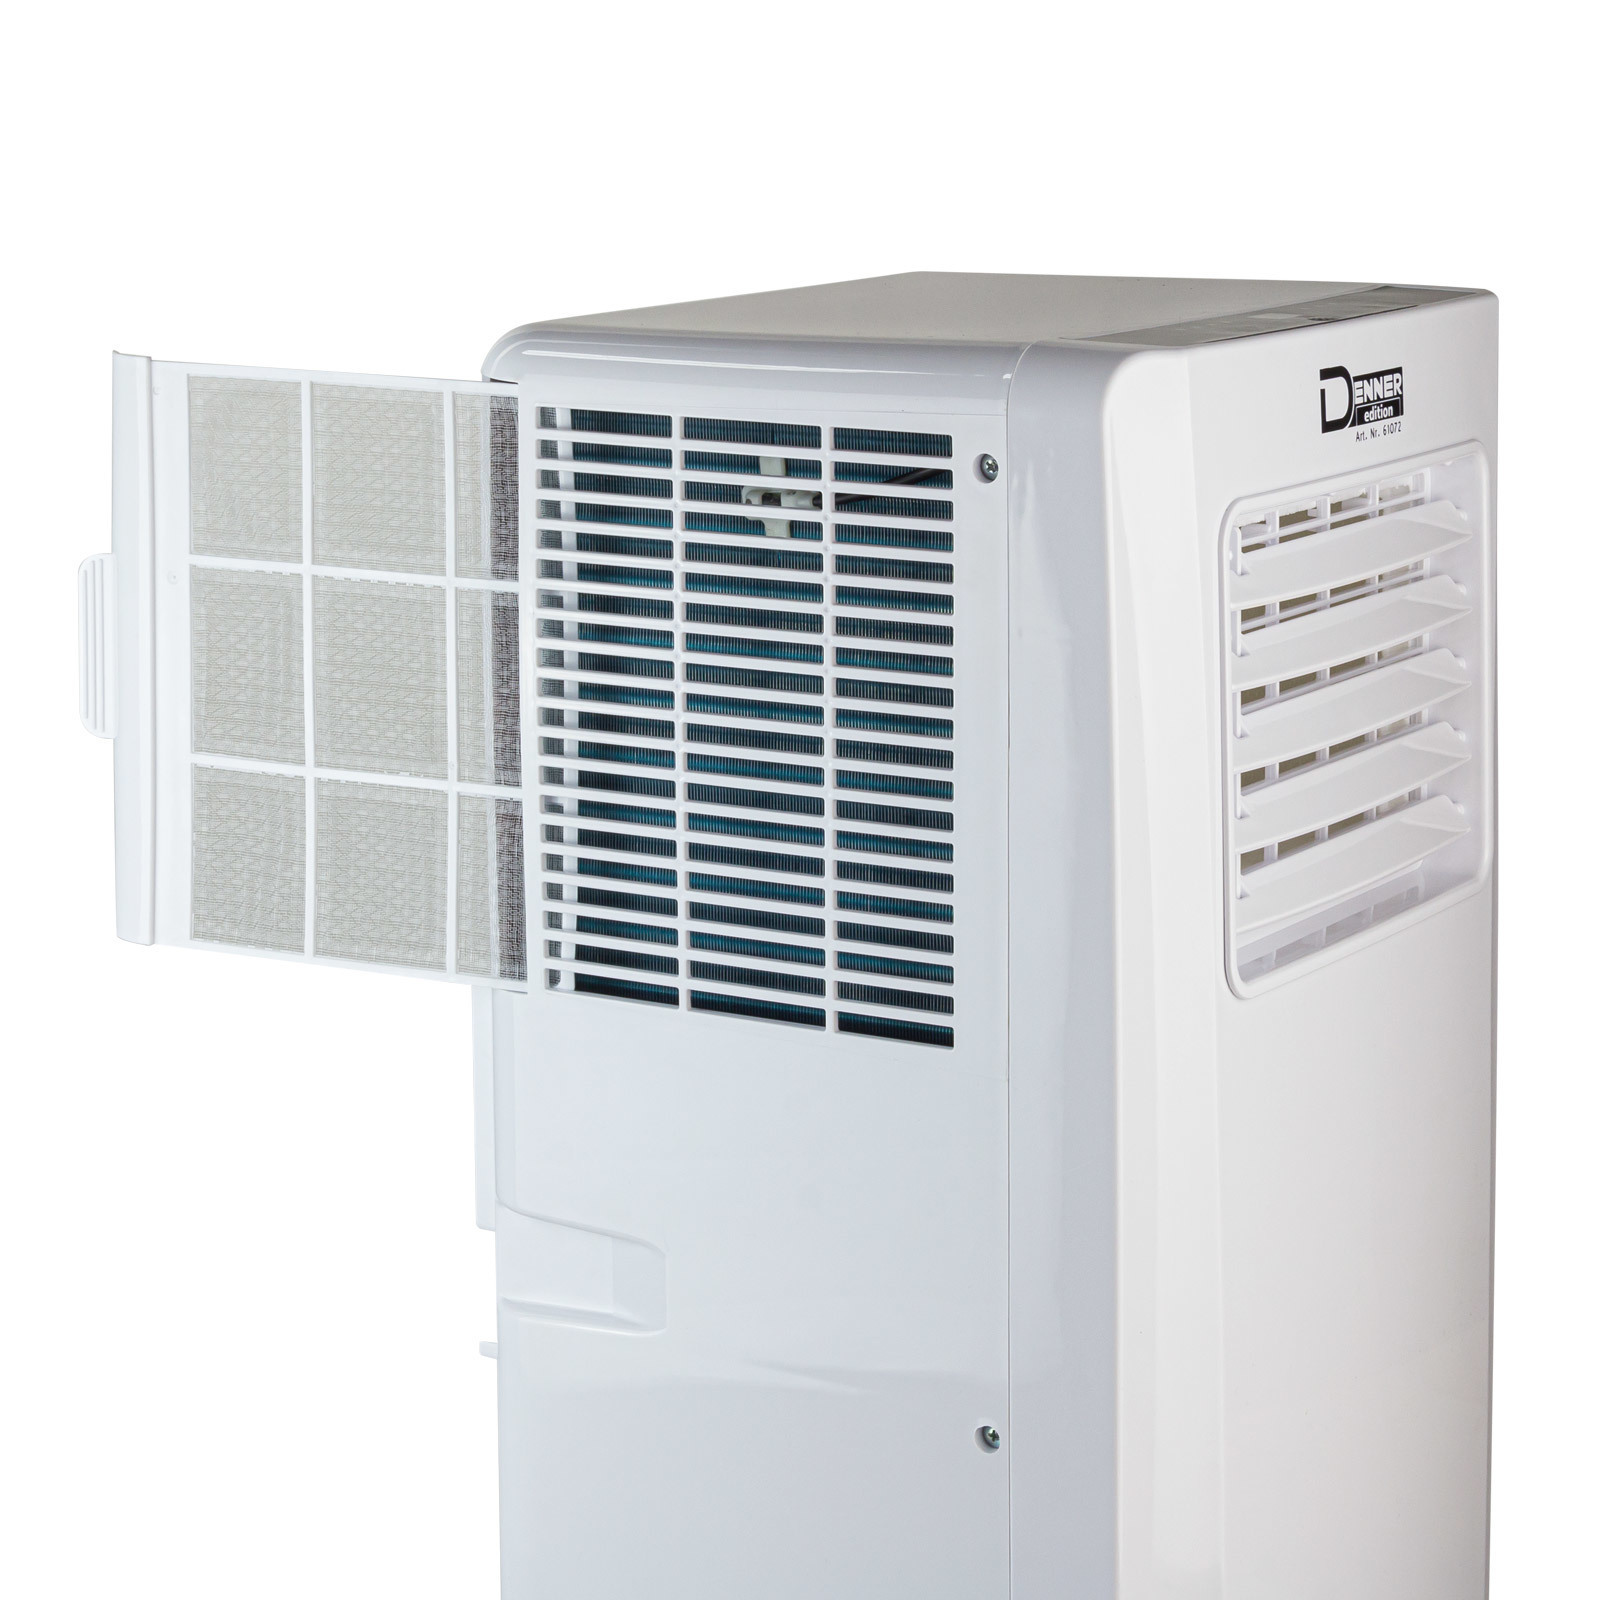 Mobiles-Klimaanlage-DMK-9000-4.jpg